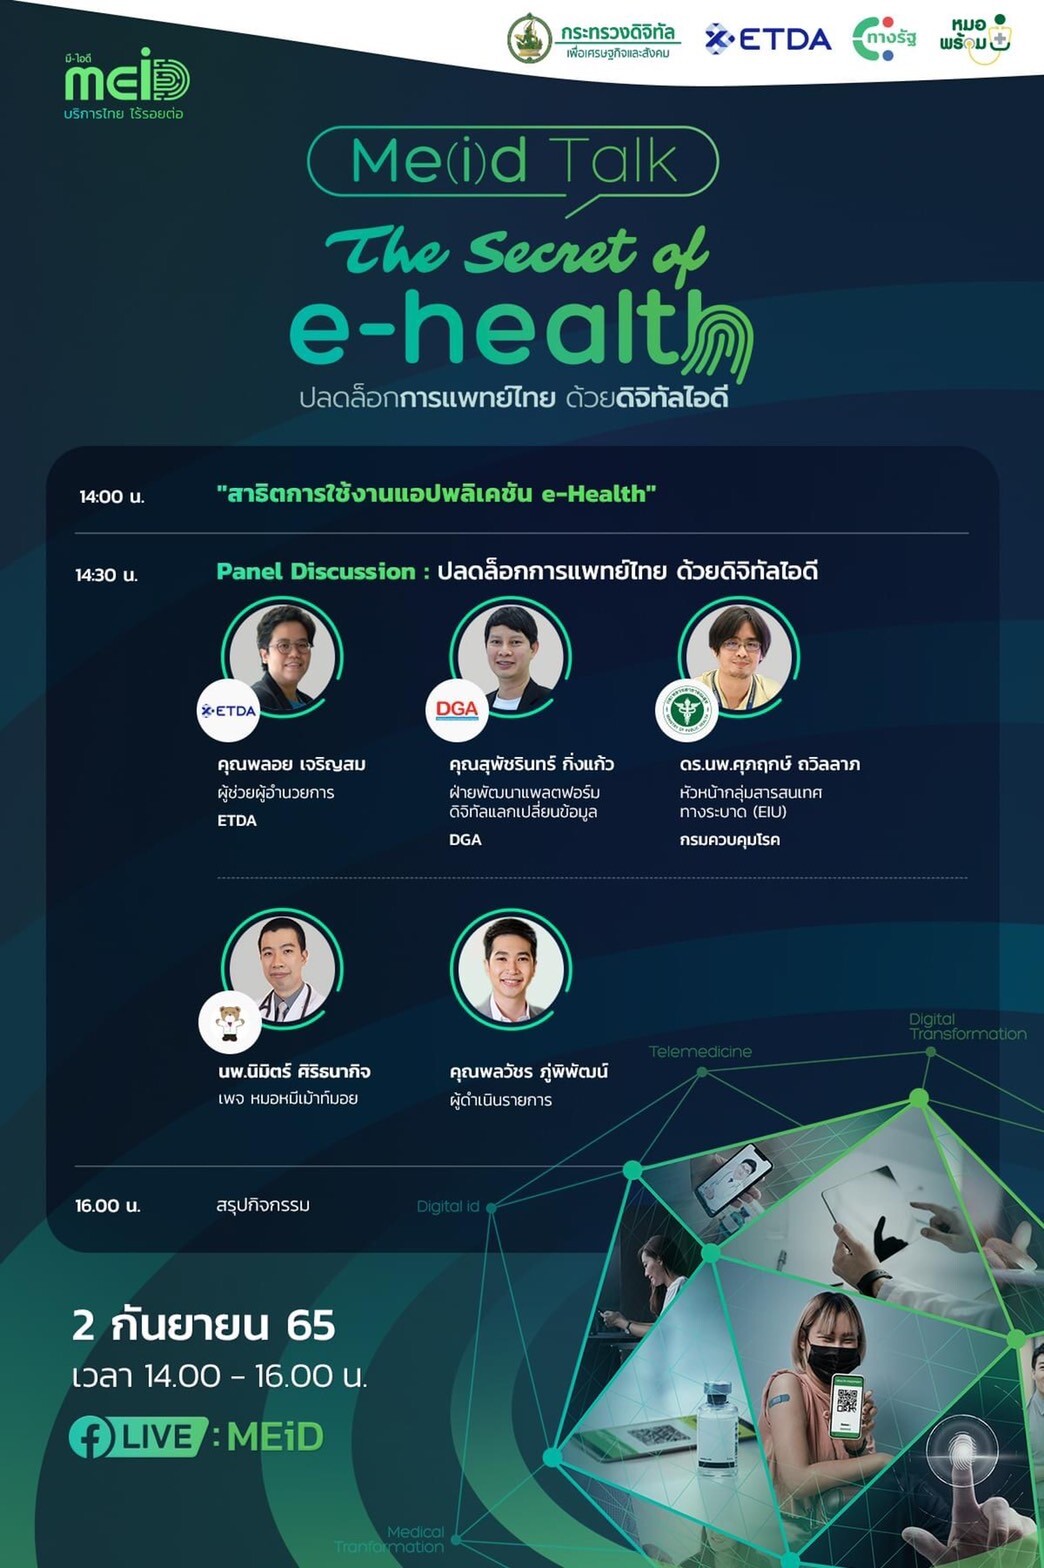 ETDA จับมือ 2 แอปฯ ดัง "หมอพร้อม-ทางรัฐ" จัด The Secret of e-Health: ปลดล็อกการแพทย์ไทย ด้วยดิจิทัลไอดี